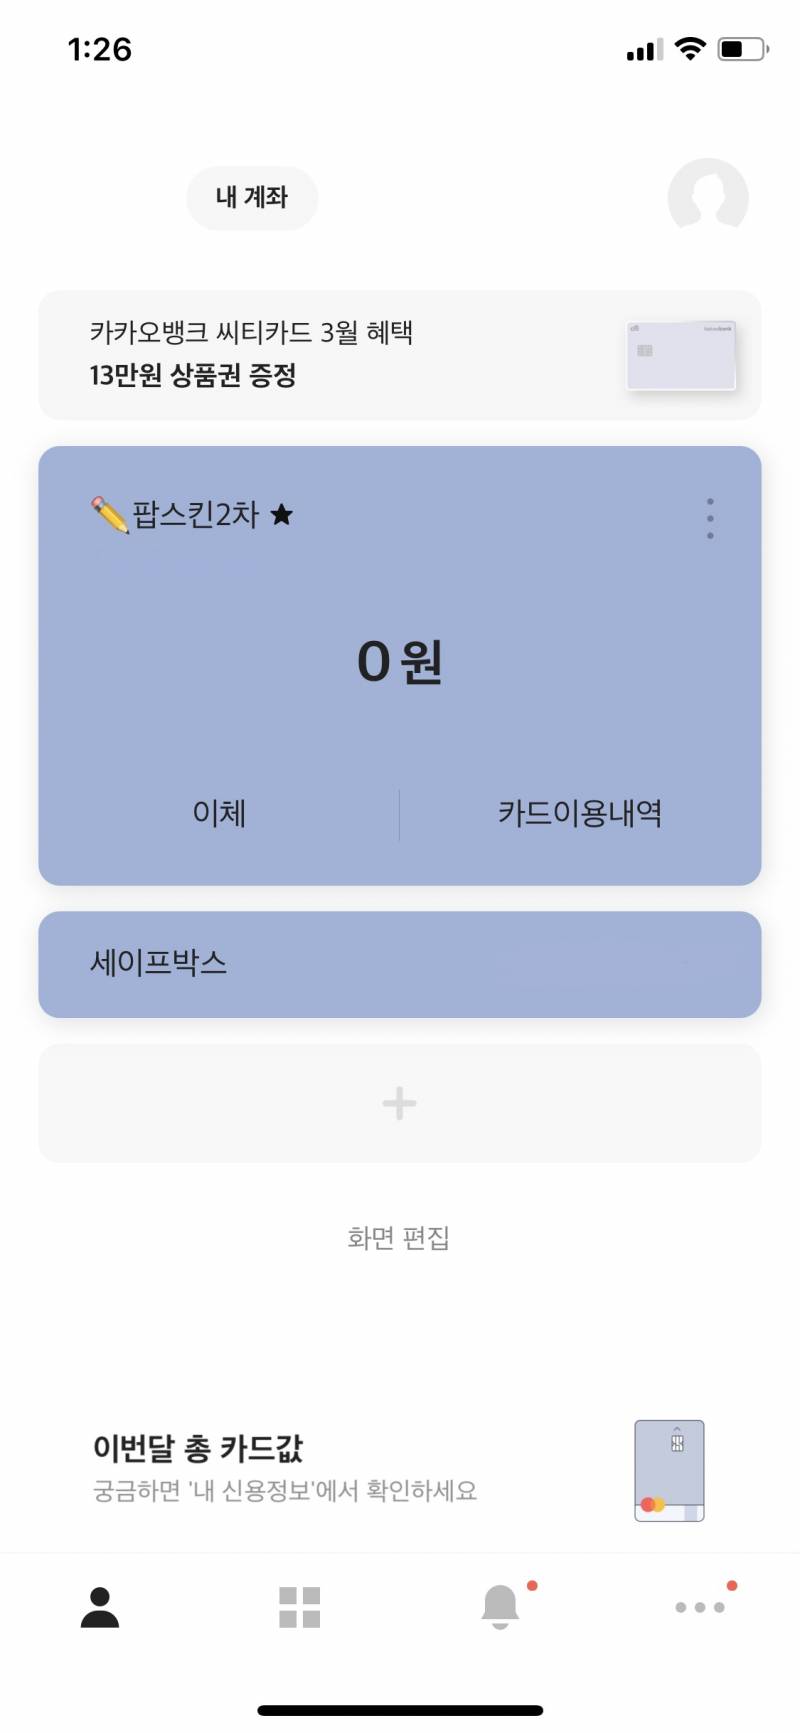 방탄소년단) ✏️ 애플펜슬 팝스킨 입금폼 배부 완료 ✏️ | 인스티즈